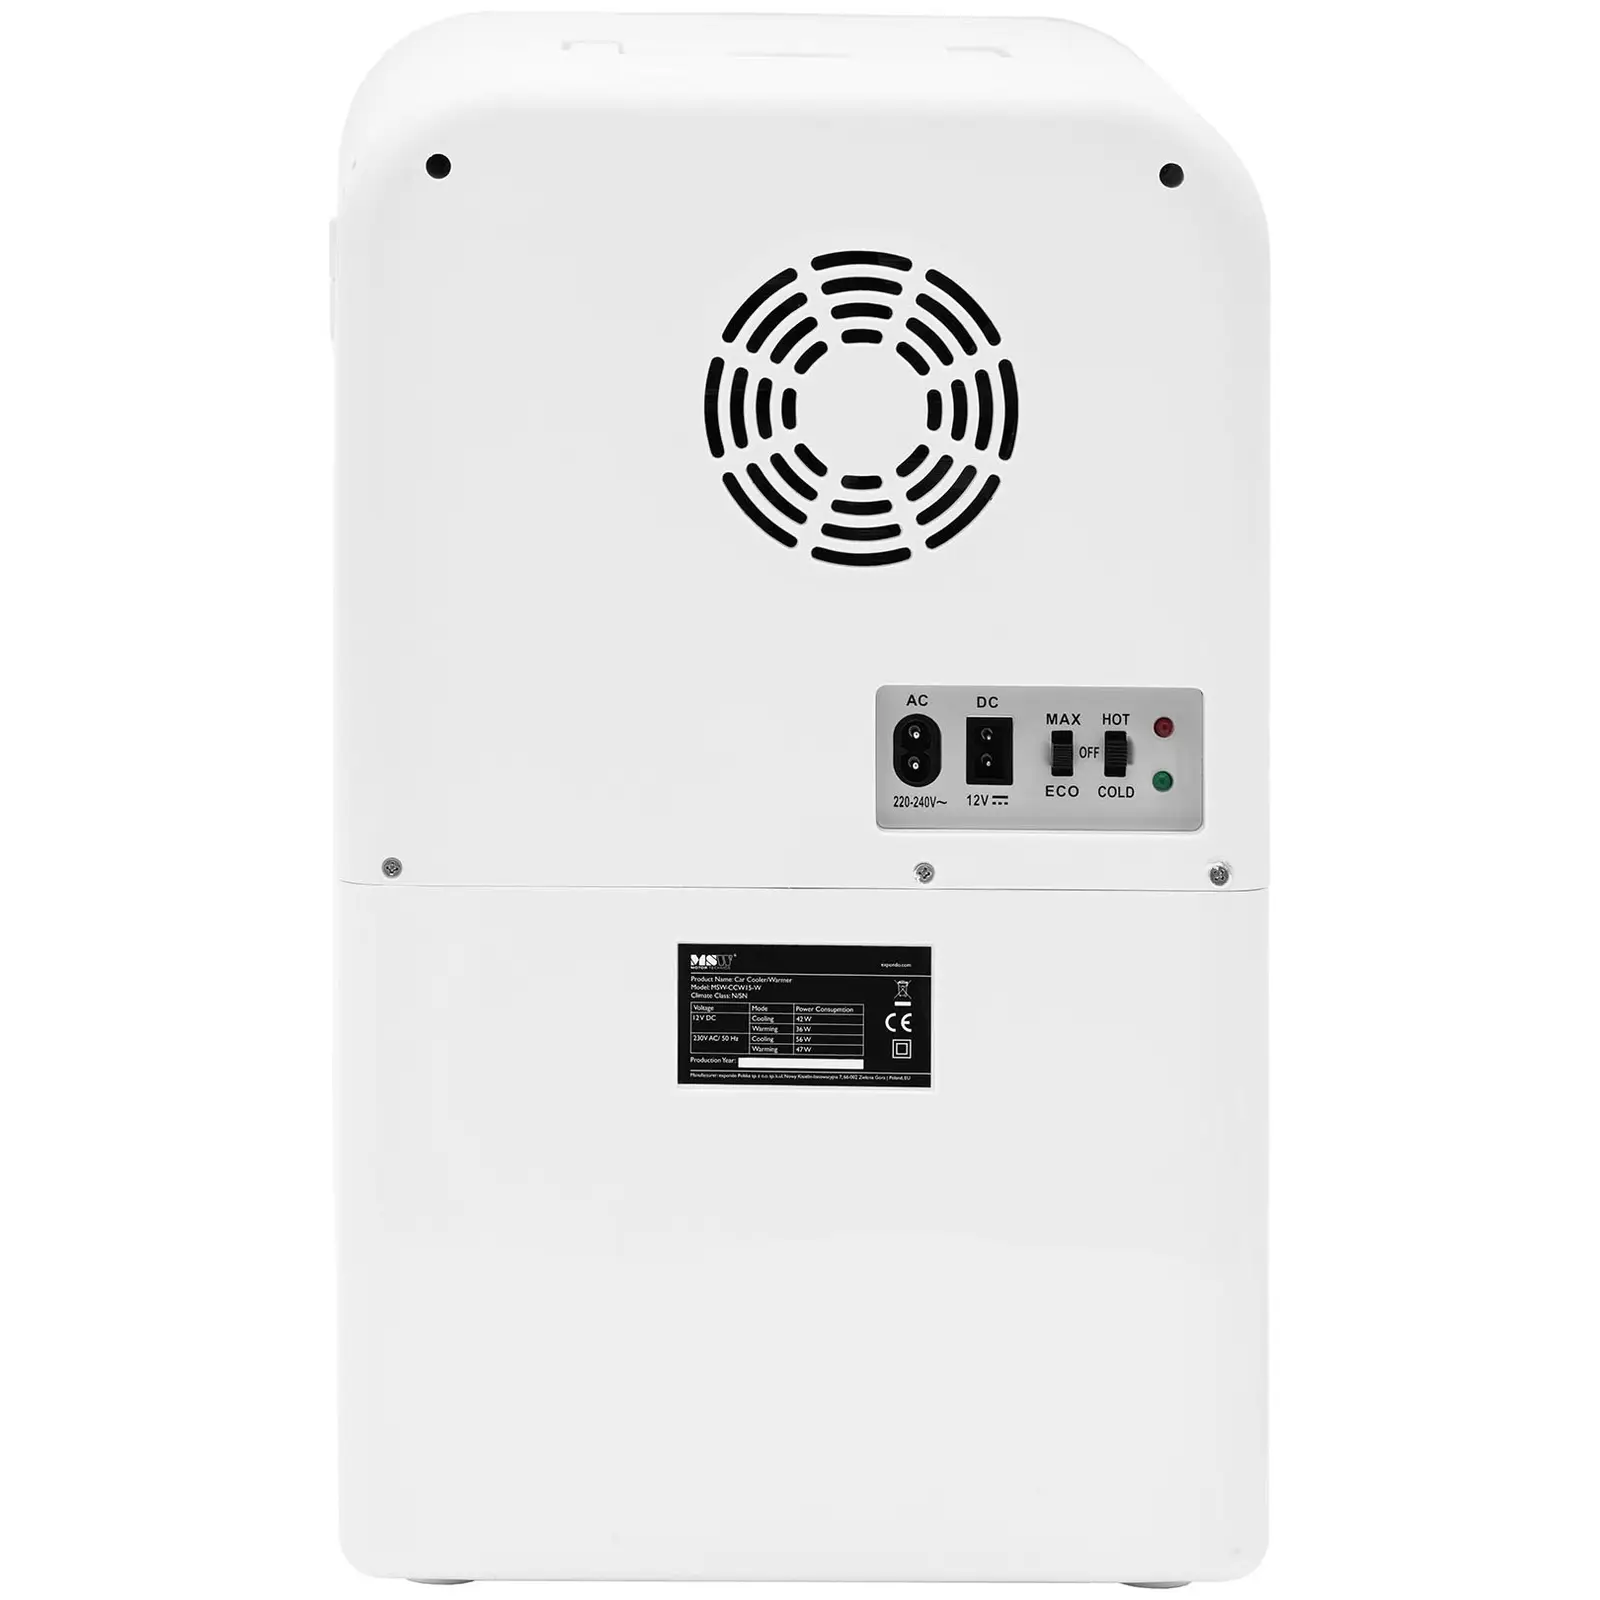 Мини хладилник 12 V / 230 V - уред 2 в 1 с функция за поддържане на топлината - 15 L - Бял